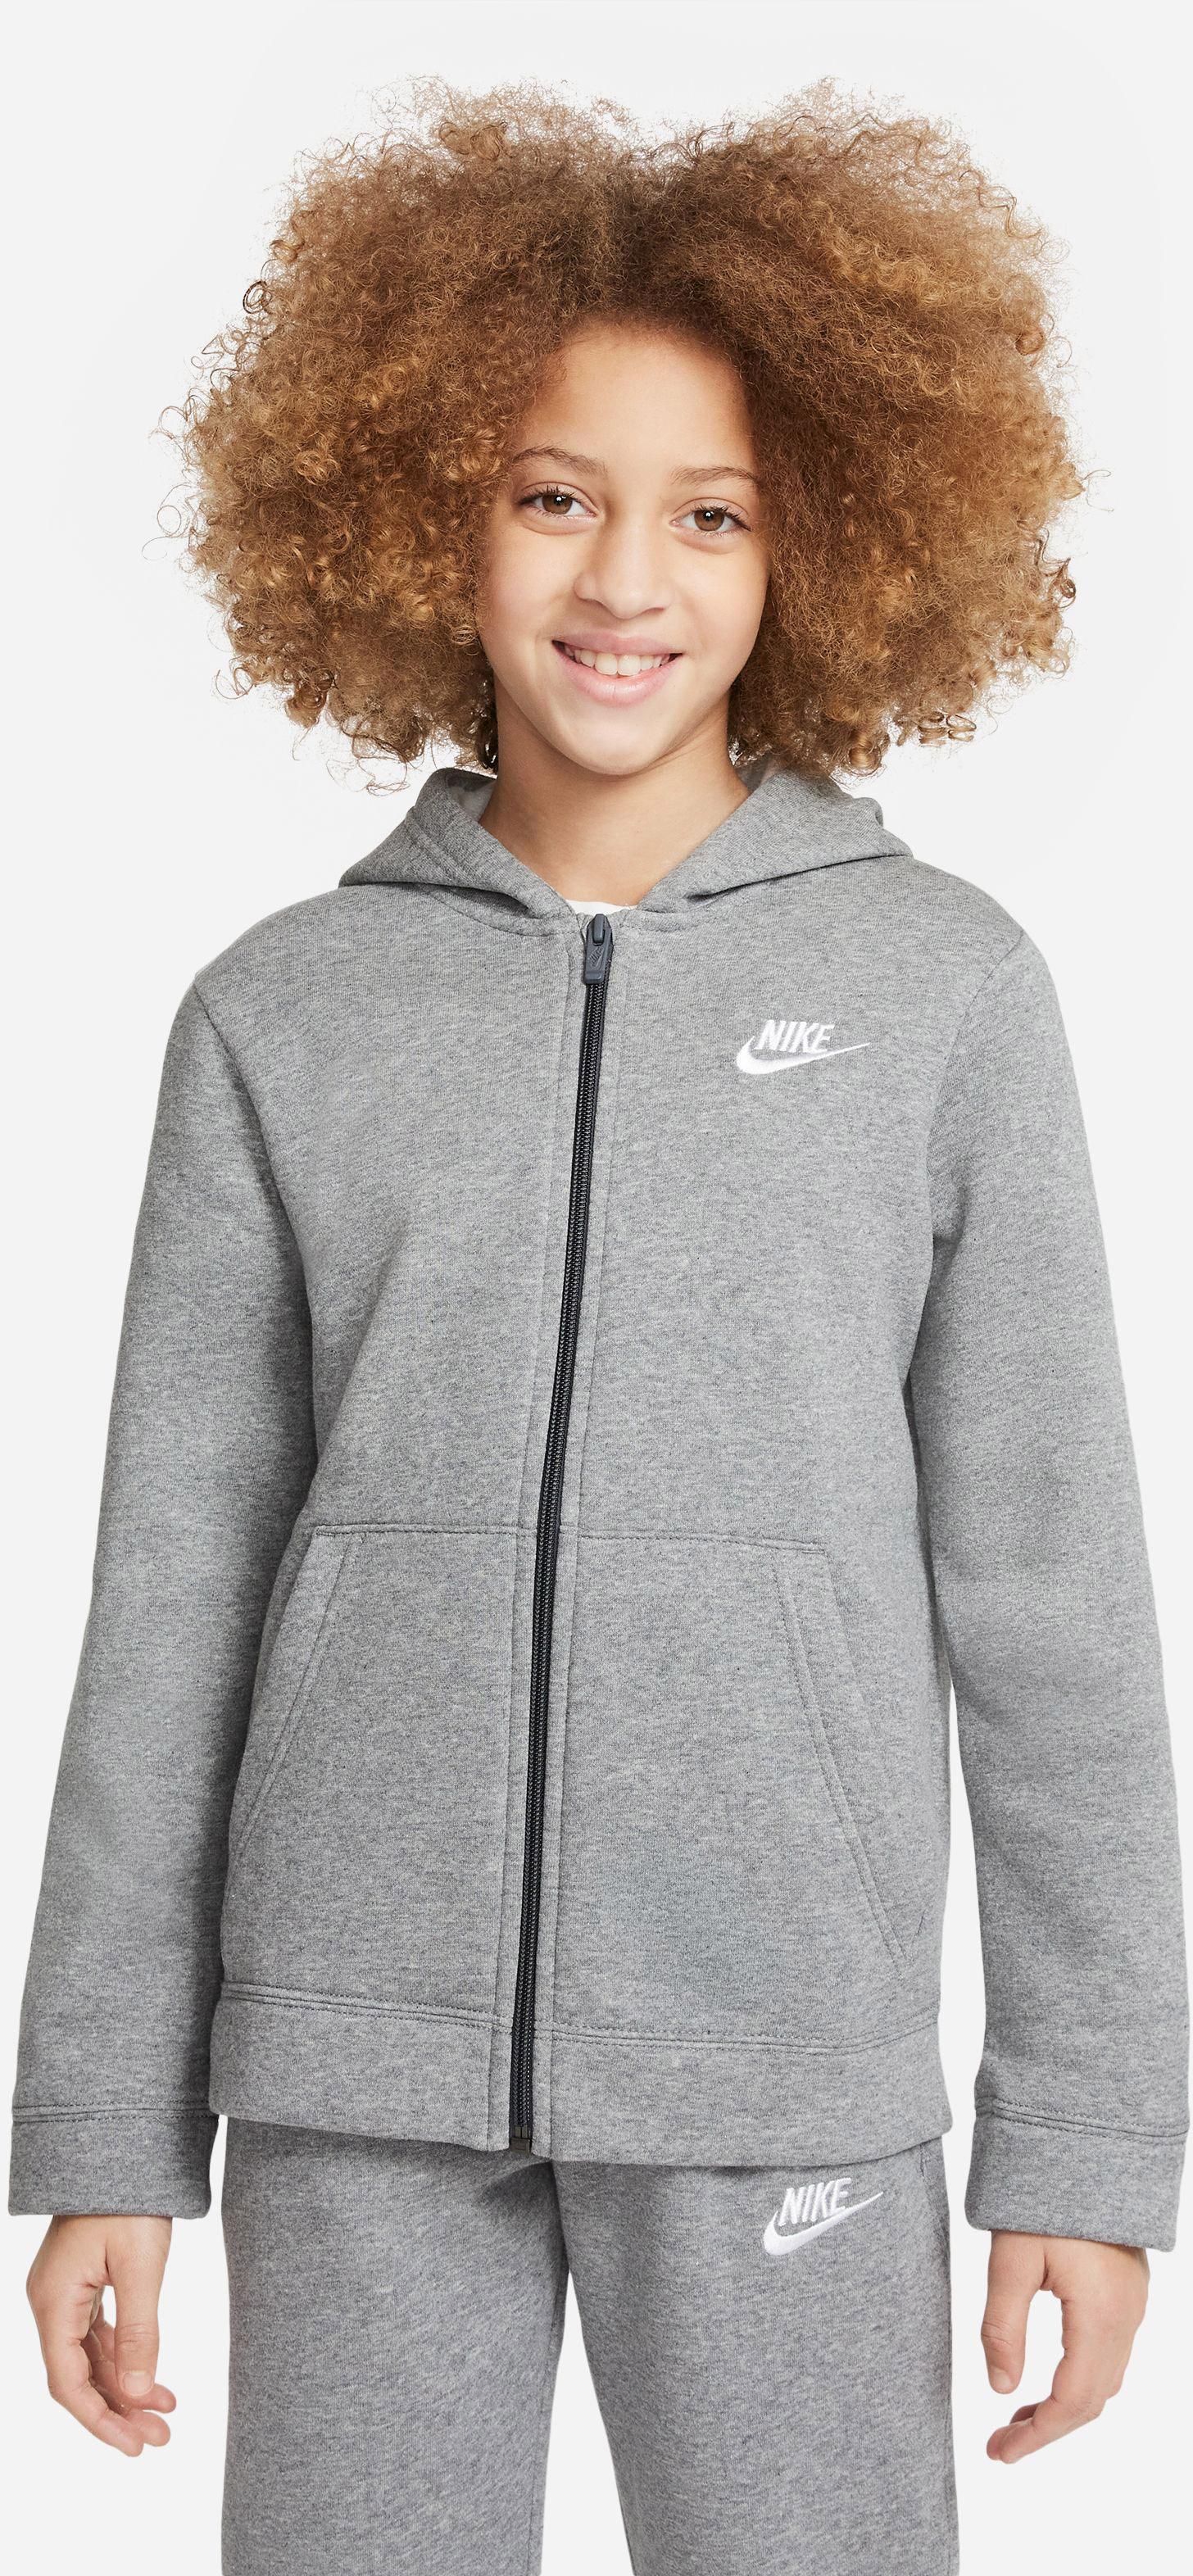 Nike NSW im Shop grey-white kaufen heather-dark CORE carbon Jungen Online Trainingsanzug SportScheck von